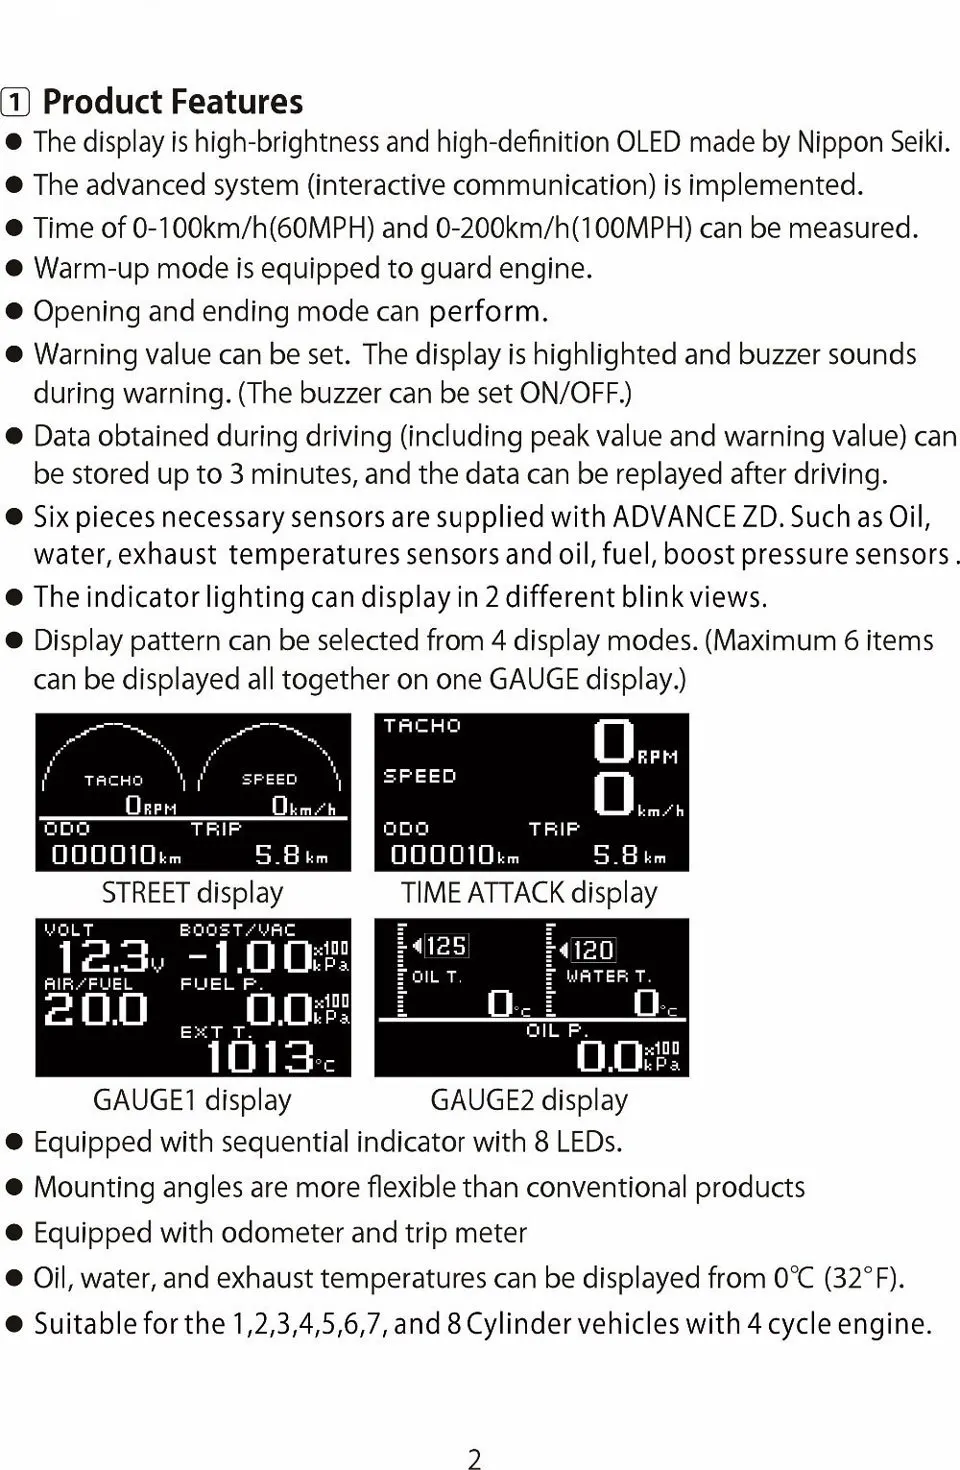 Универсальный автоматический датчик 10в1 новая версия DEFI Advance ZD Link Meter Цифровой тахометр вольт скорость температура воды и масла пресс boost